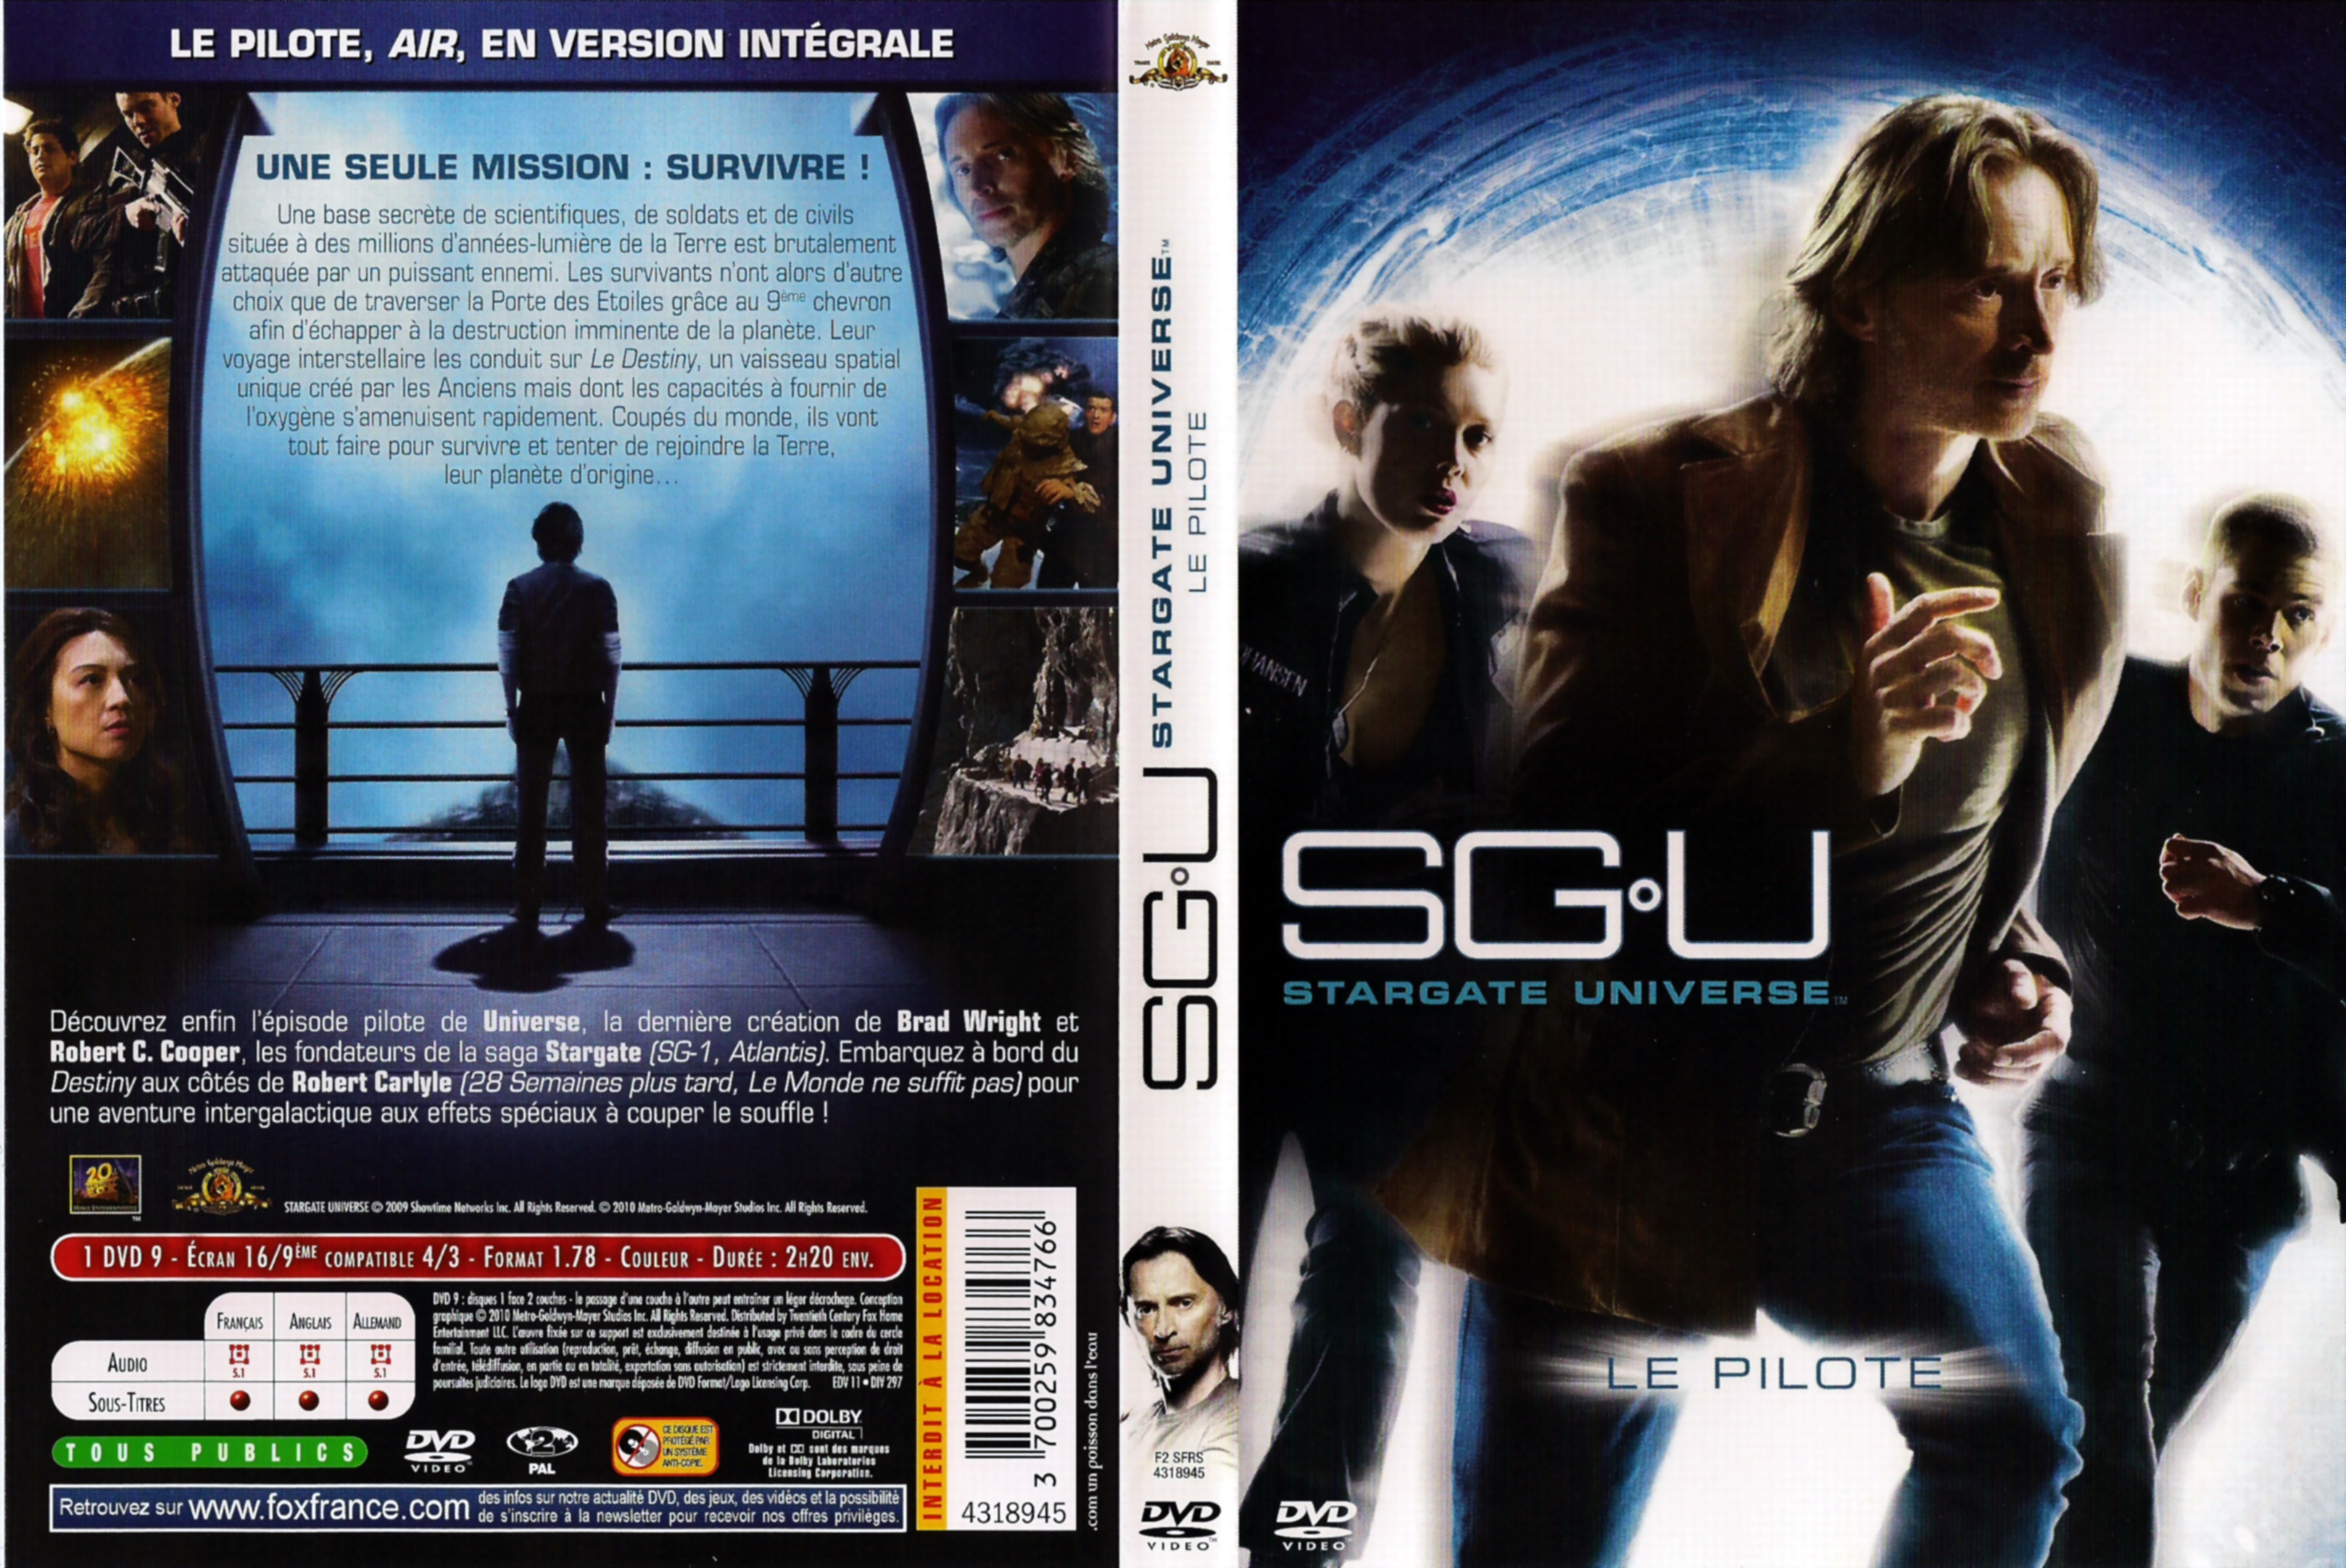 Jaquette DVD Stargate Universe Saison 1 (le pilote)